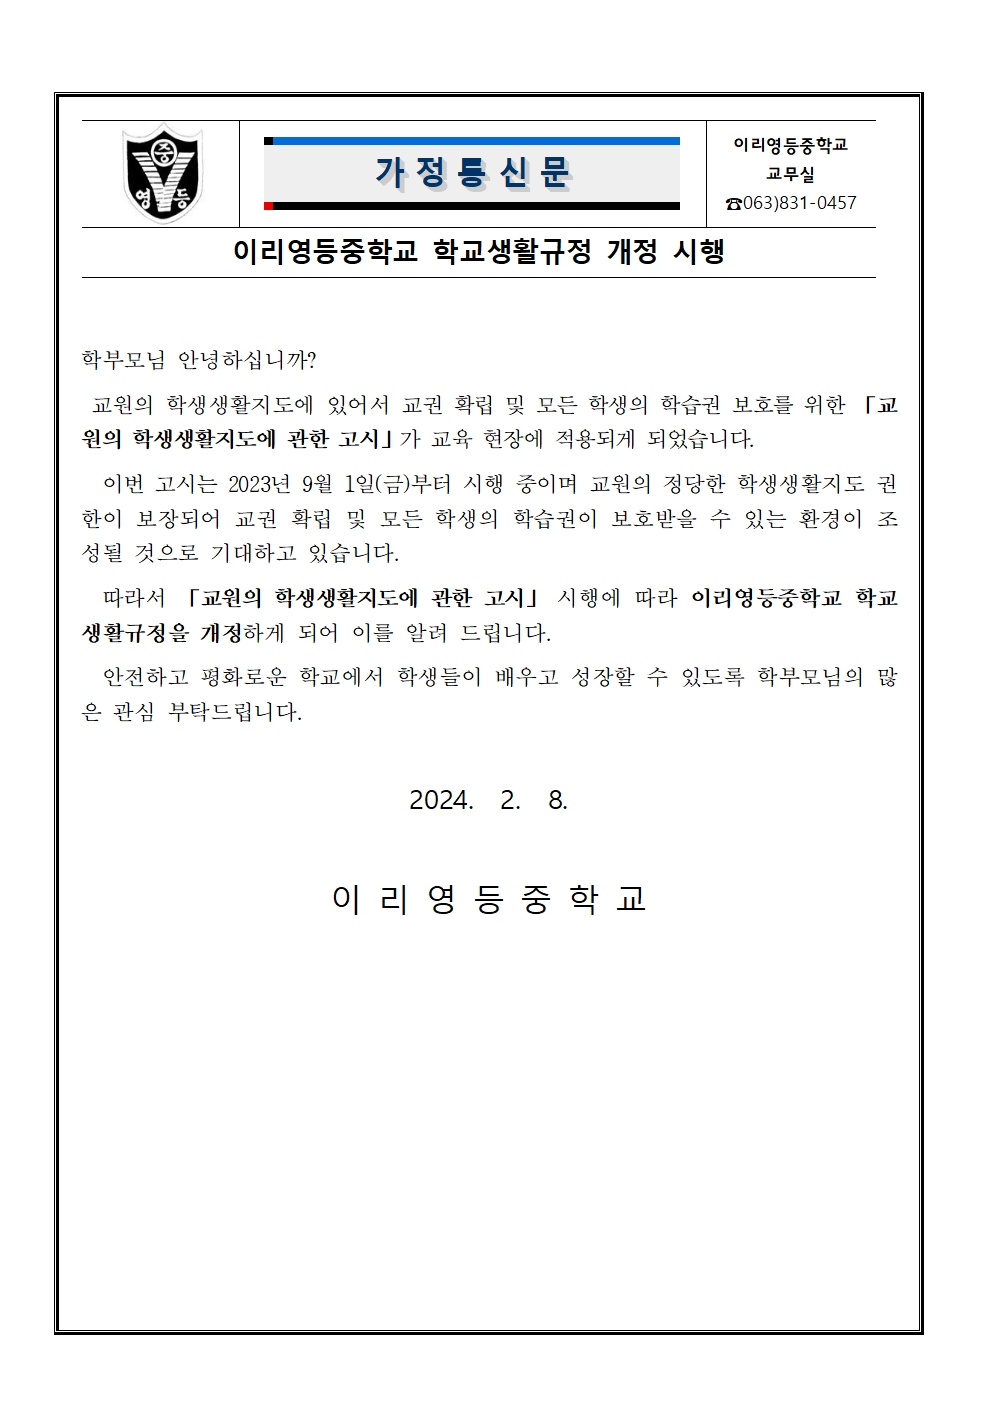 이리영등중학교 학교생활규정 개정 시행 가정통신문001